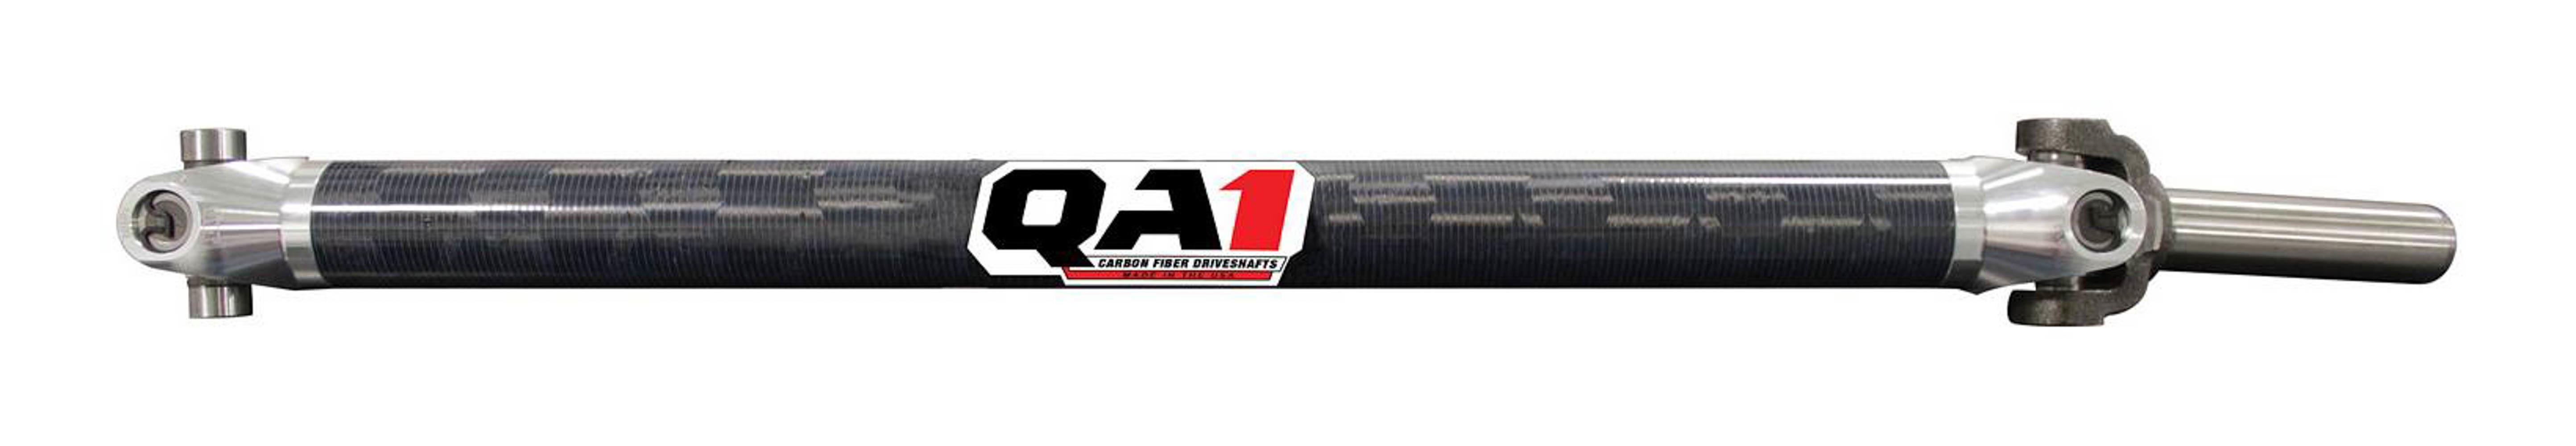 QA1 JJ-12201 Drive Shaft, Dirt Modified, 29 in Long, 2.25 in OD, 1310 U-Joints, 8 in Slip Yoke, Carbon Fiber, Universal, Each